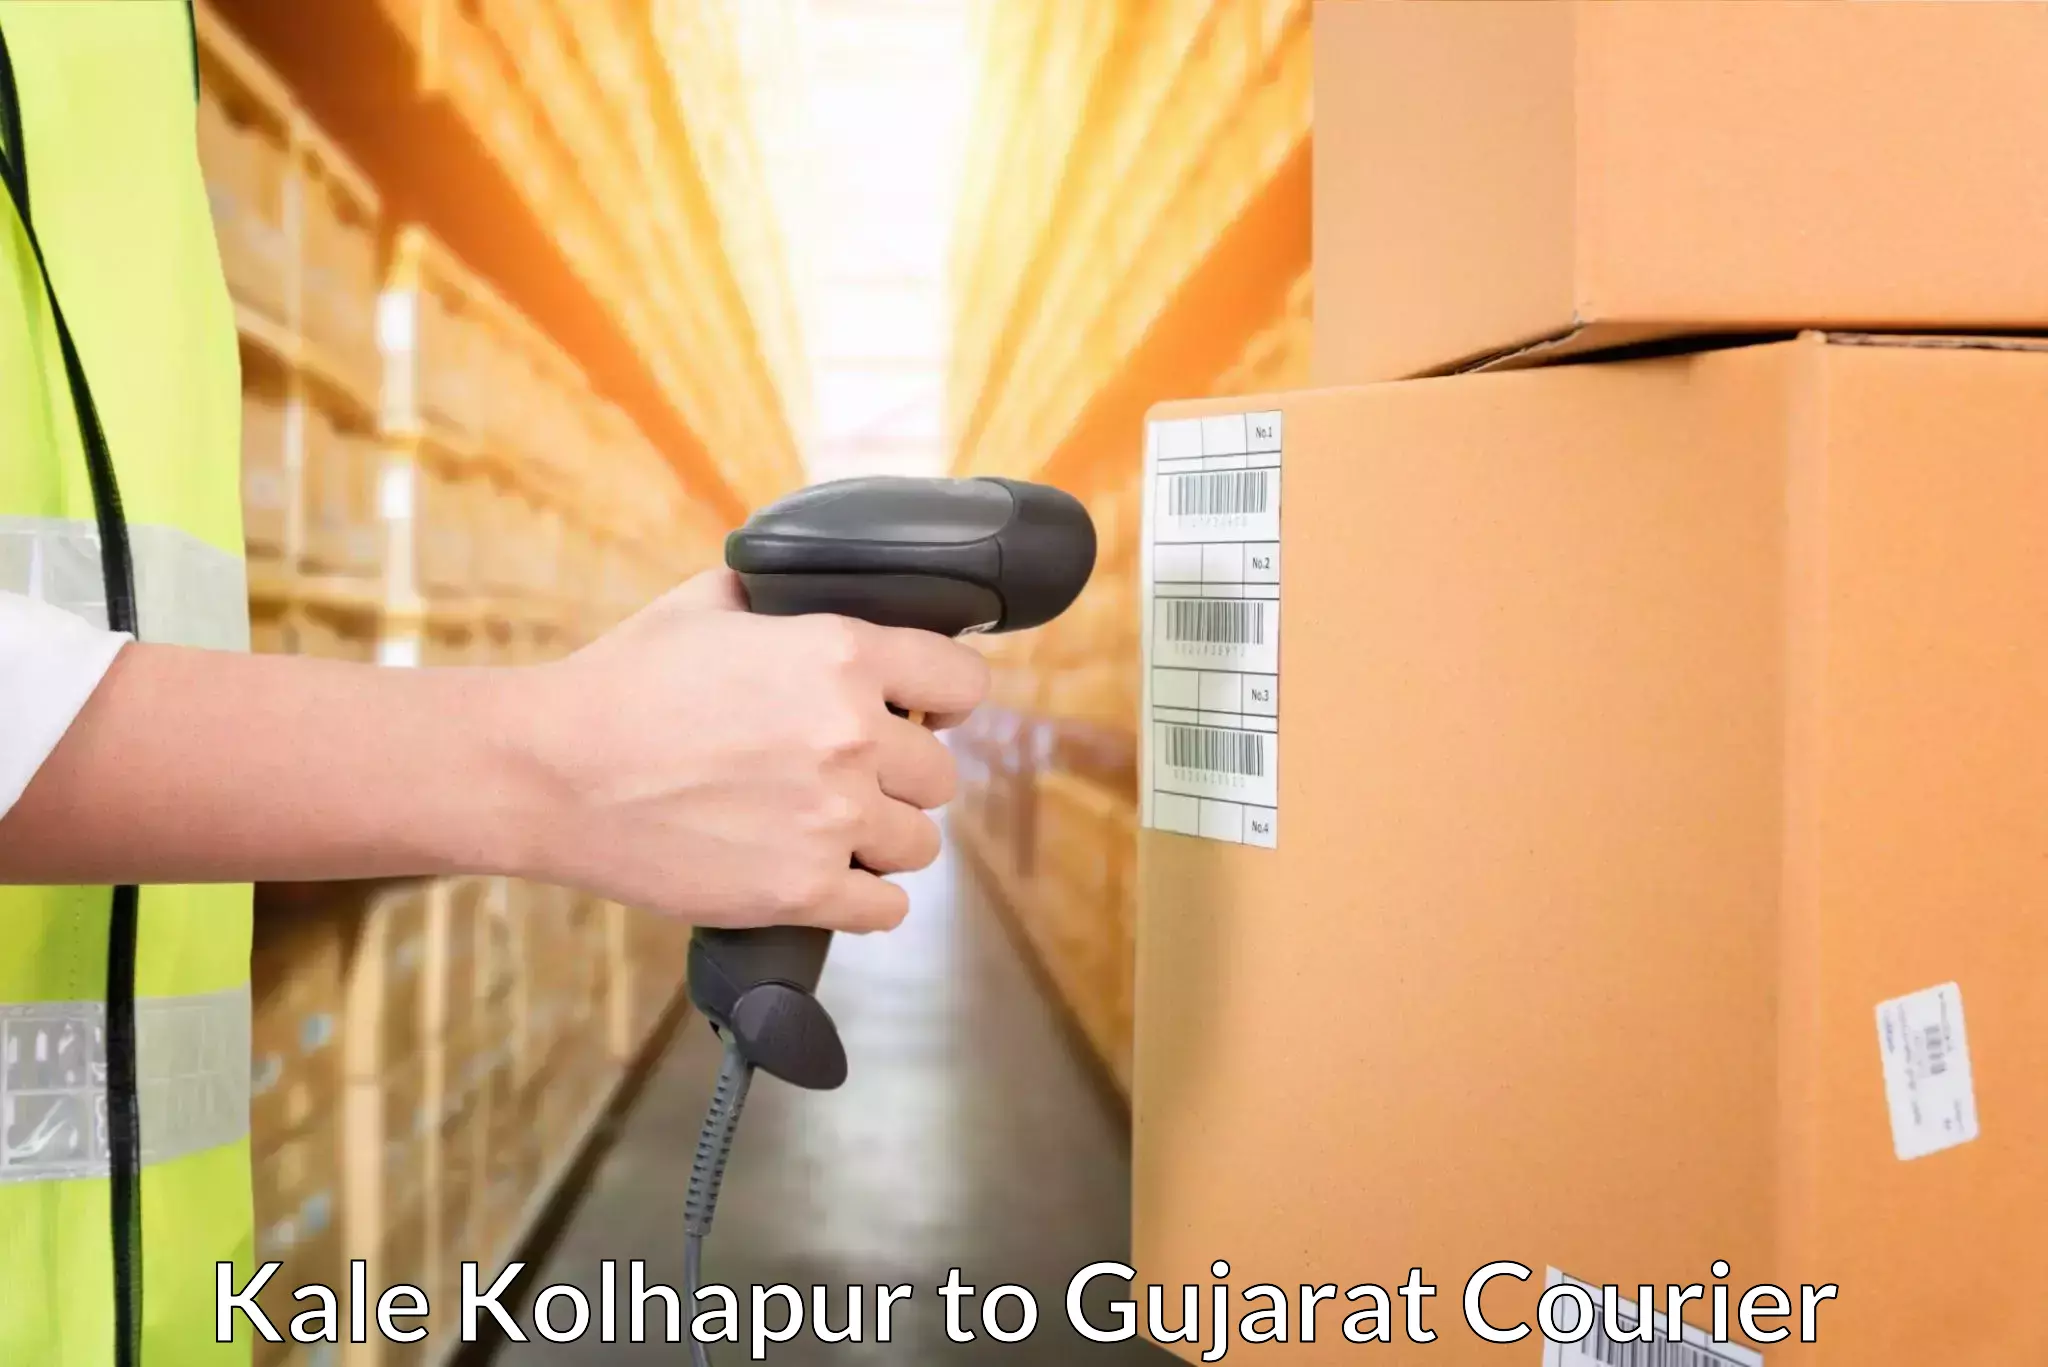 Efficient freight service Kale Kolhapur to Himatnagar